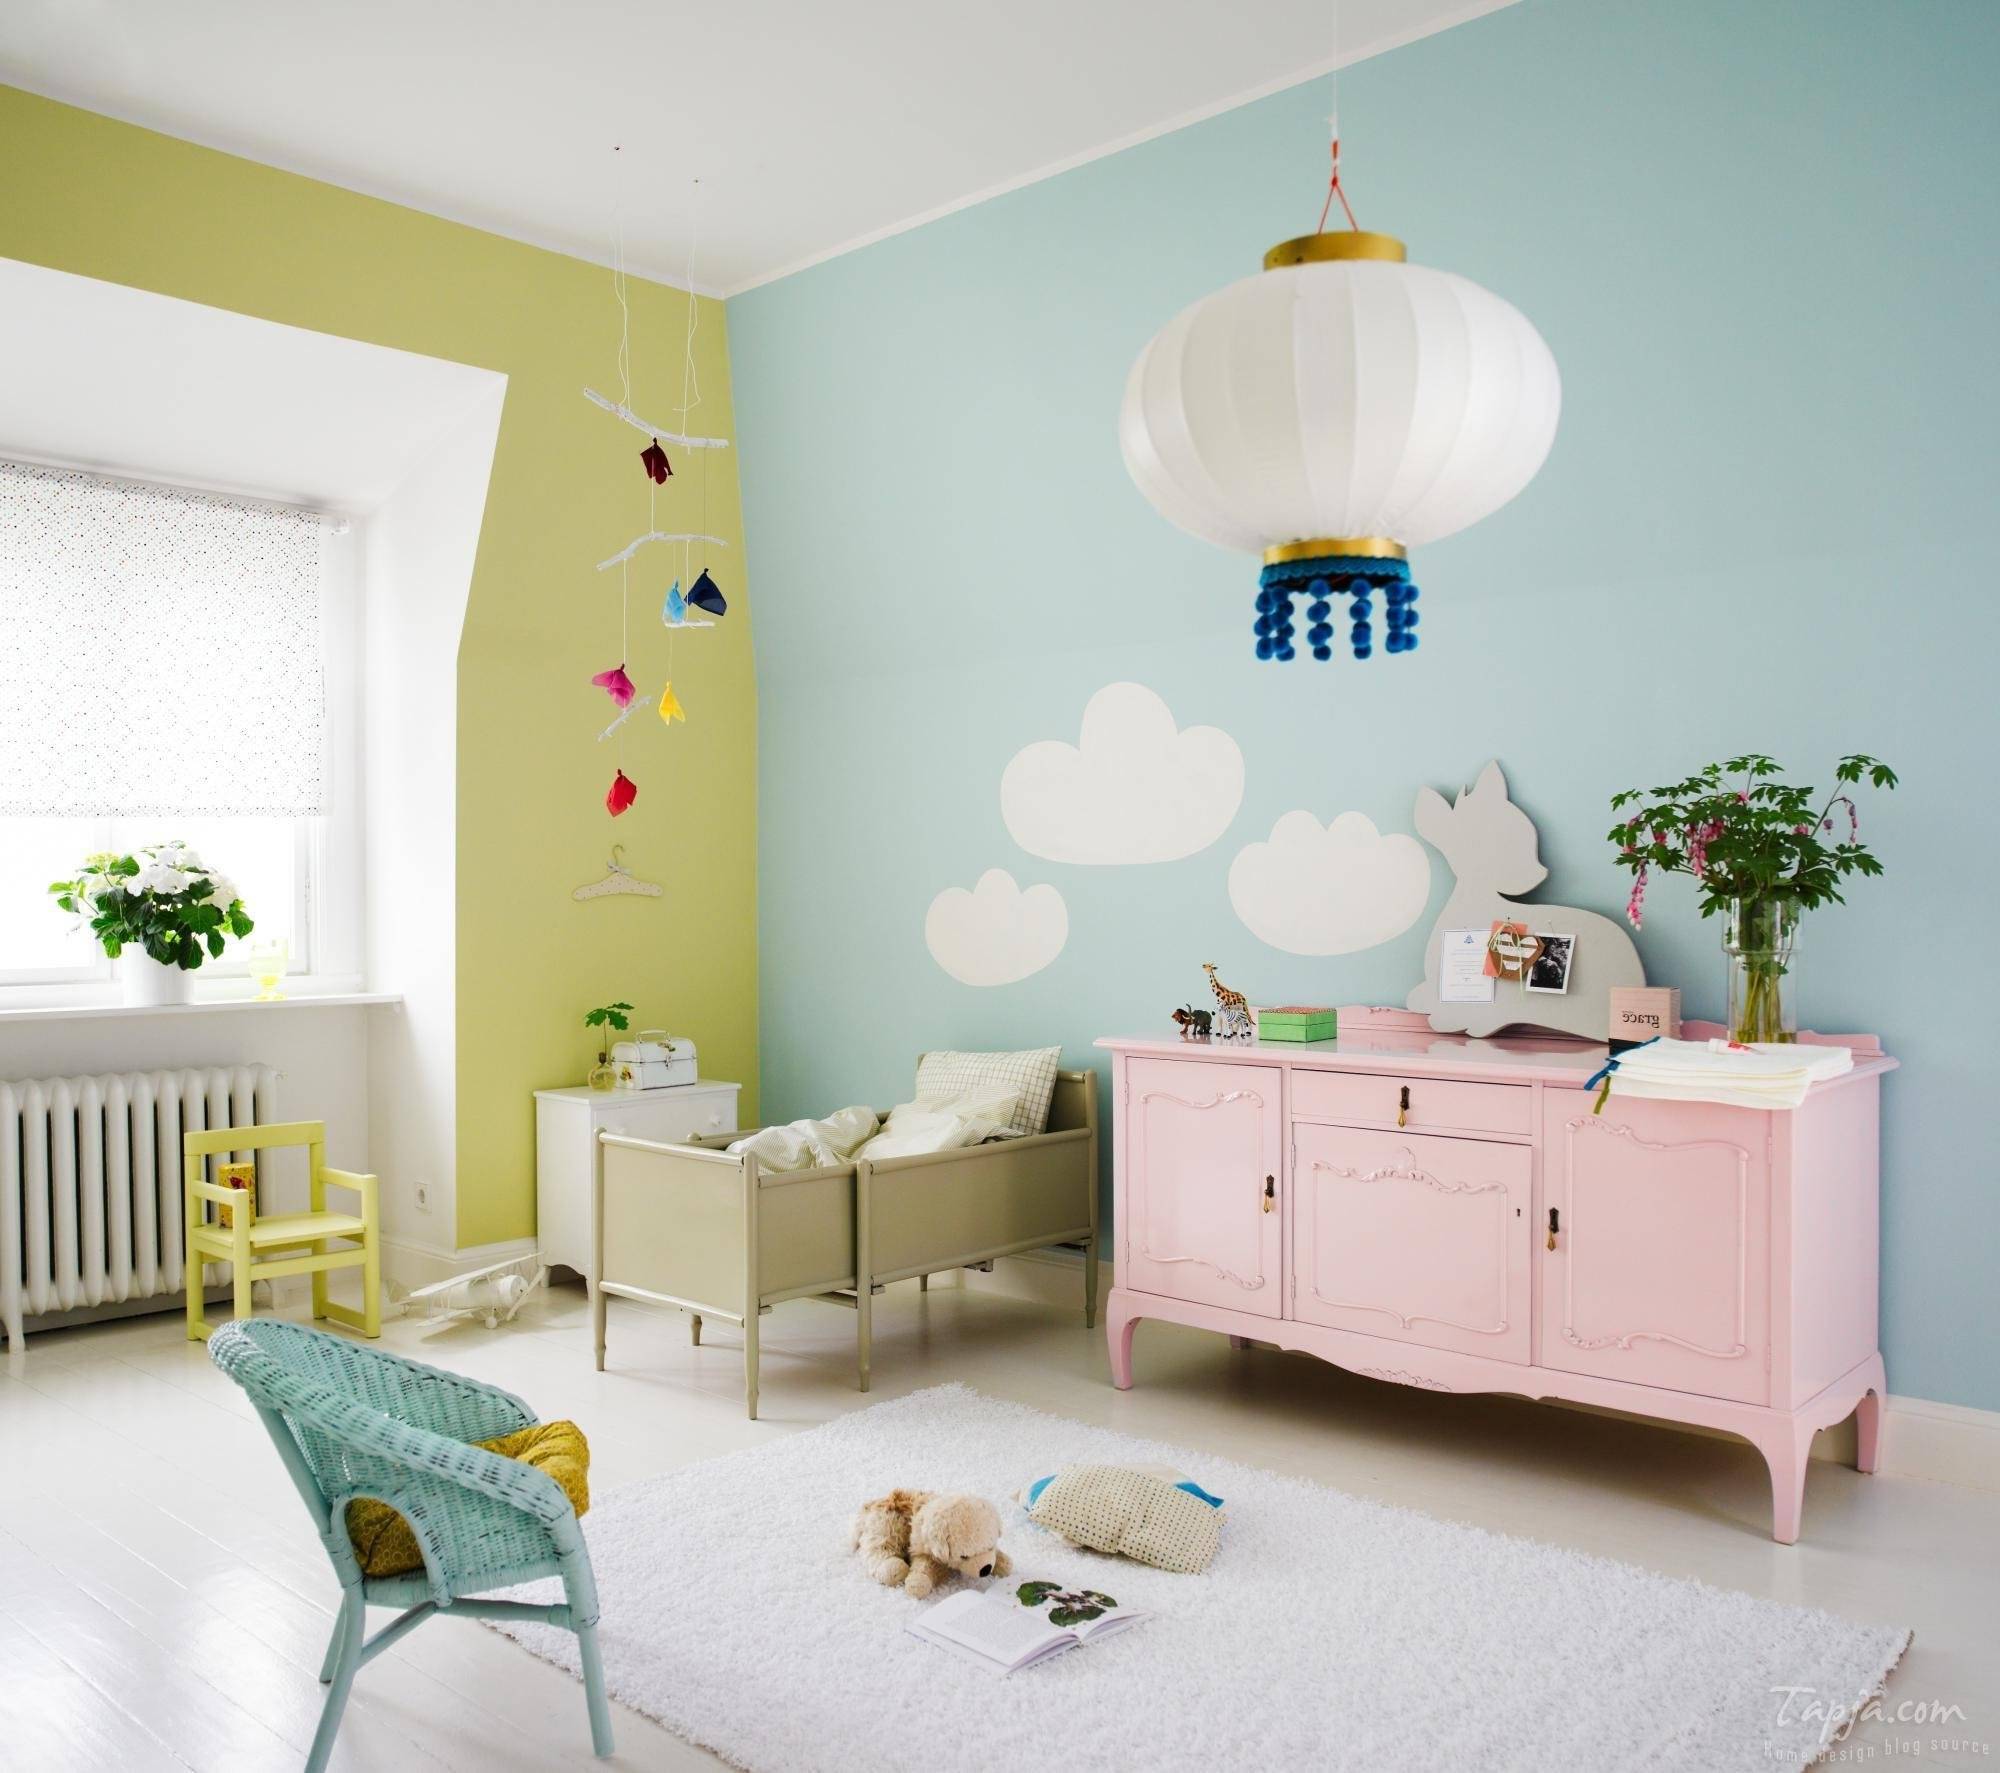 Современная отделка стен в детской комнате: фото и советы профессионалов